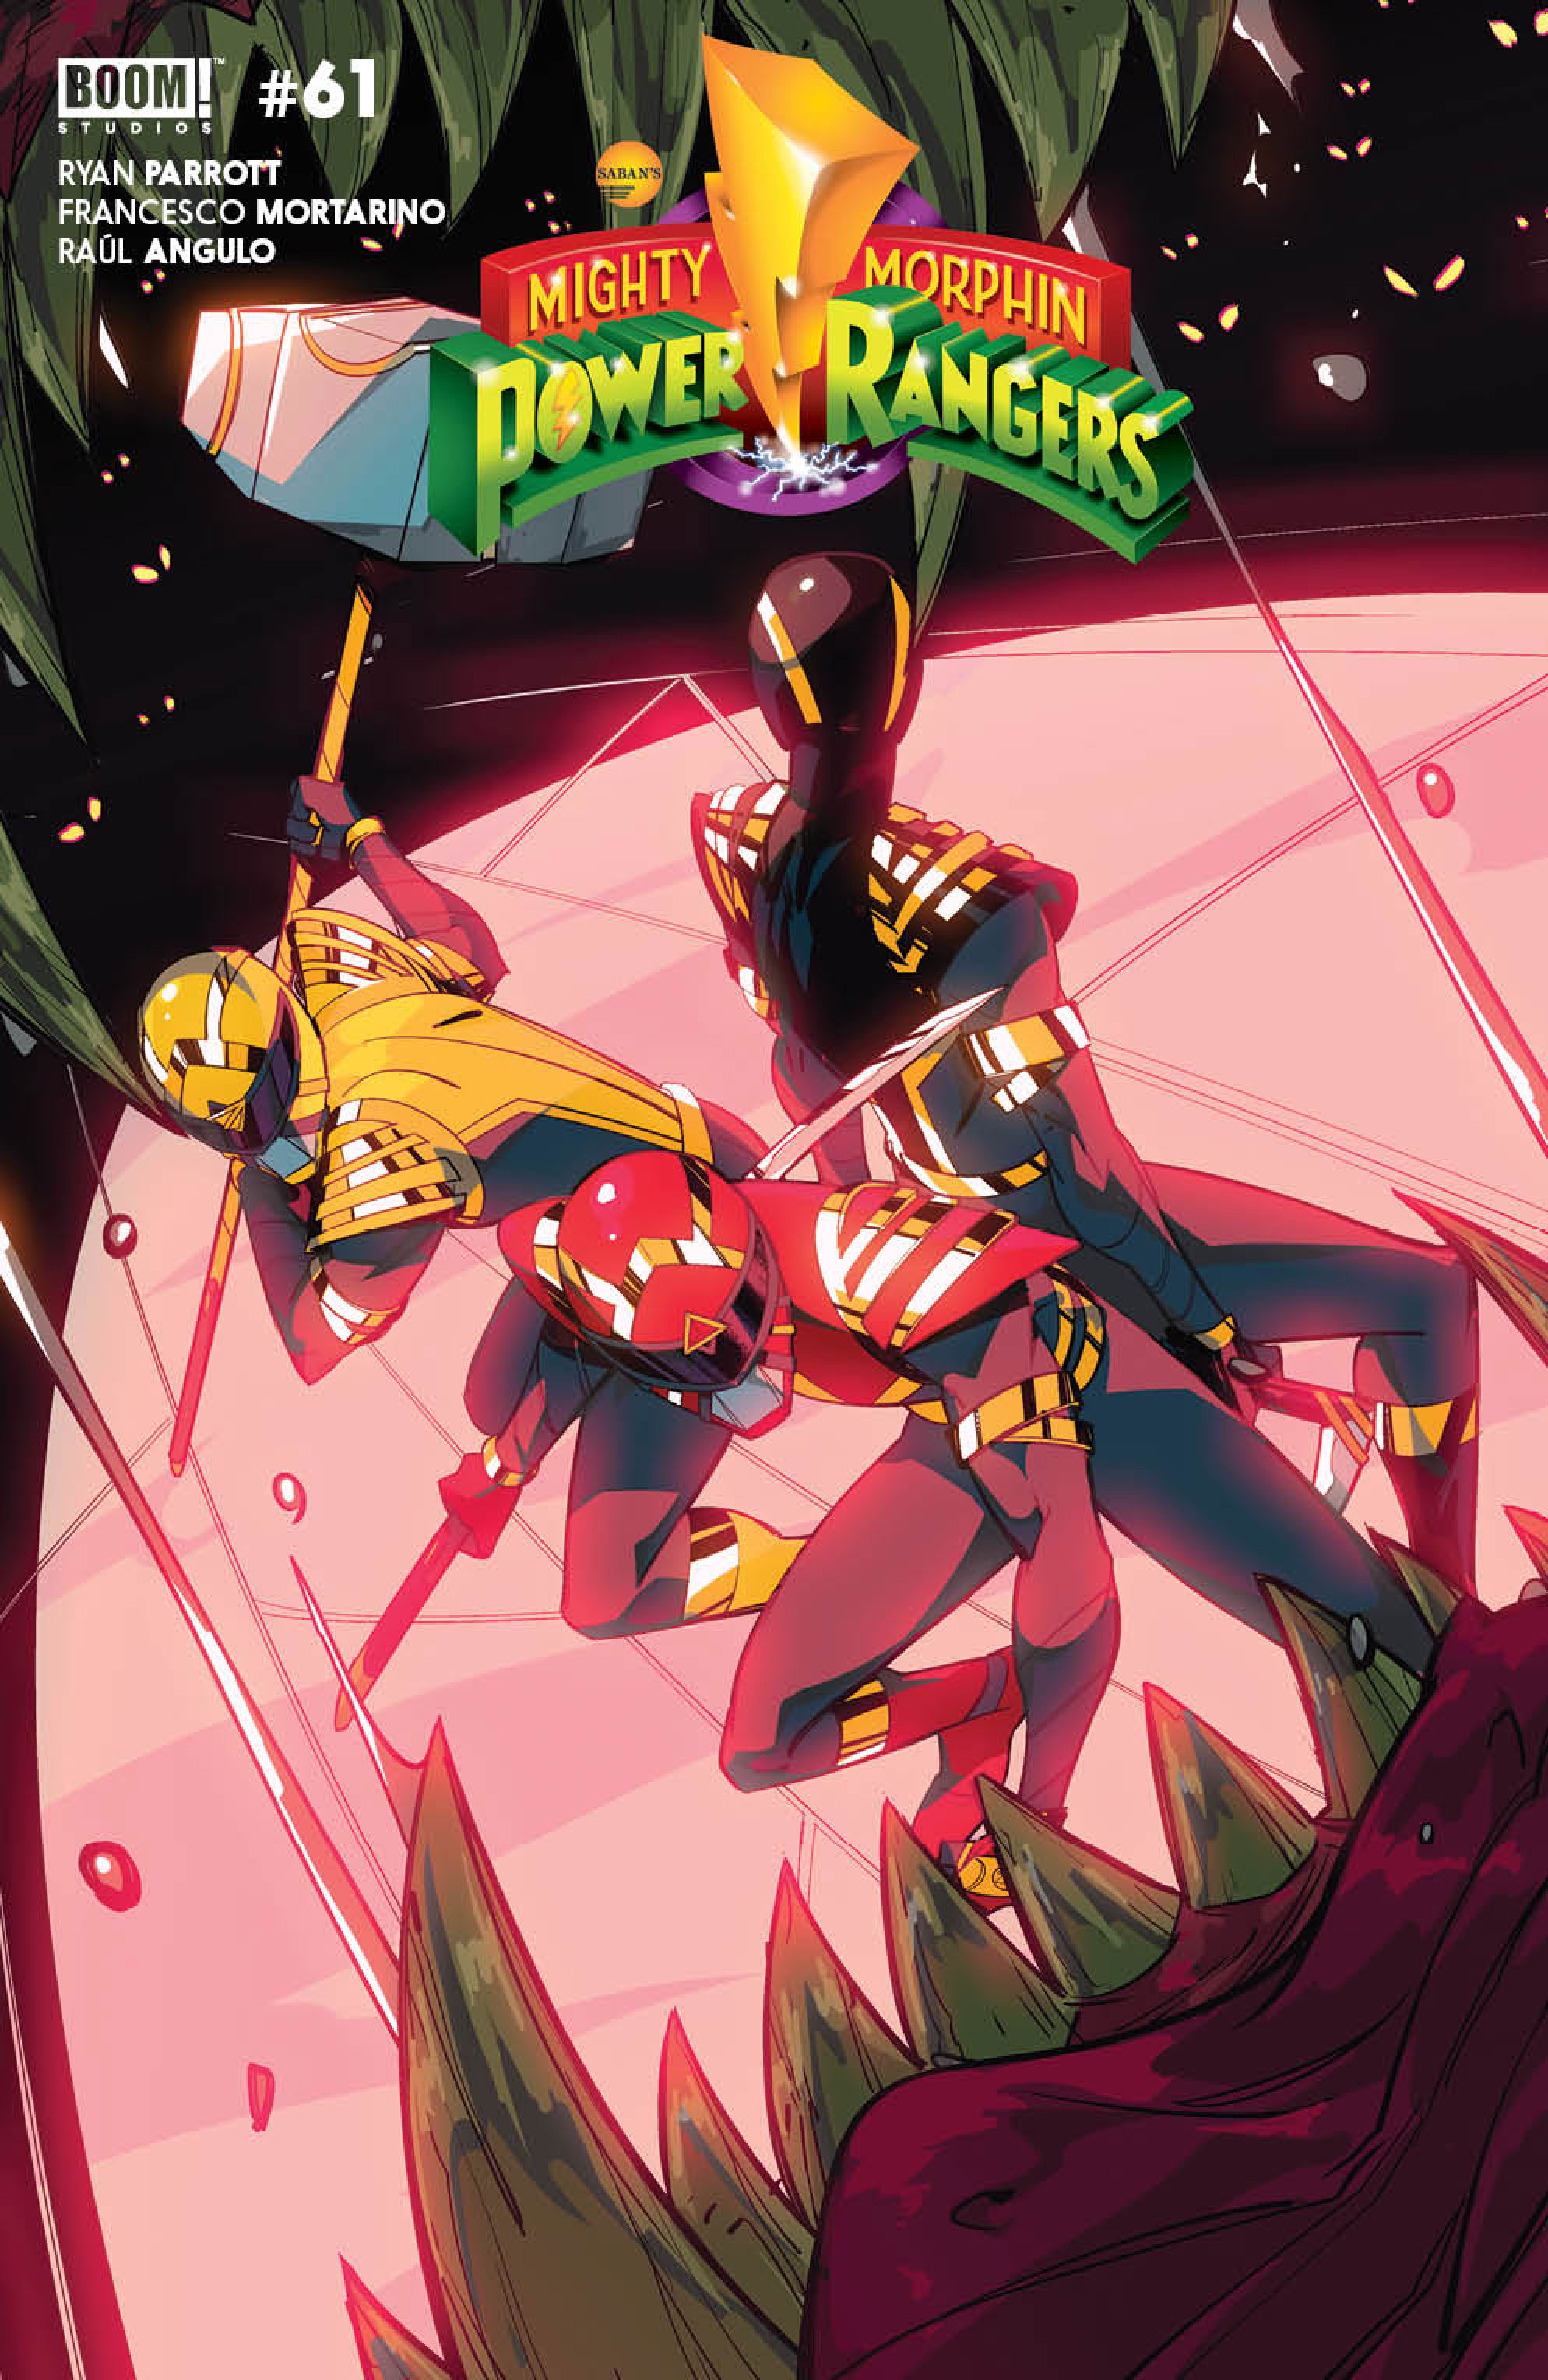 Power Rangers #3 Cover B Di Nicuolo